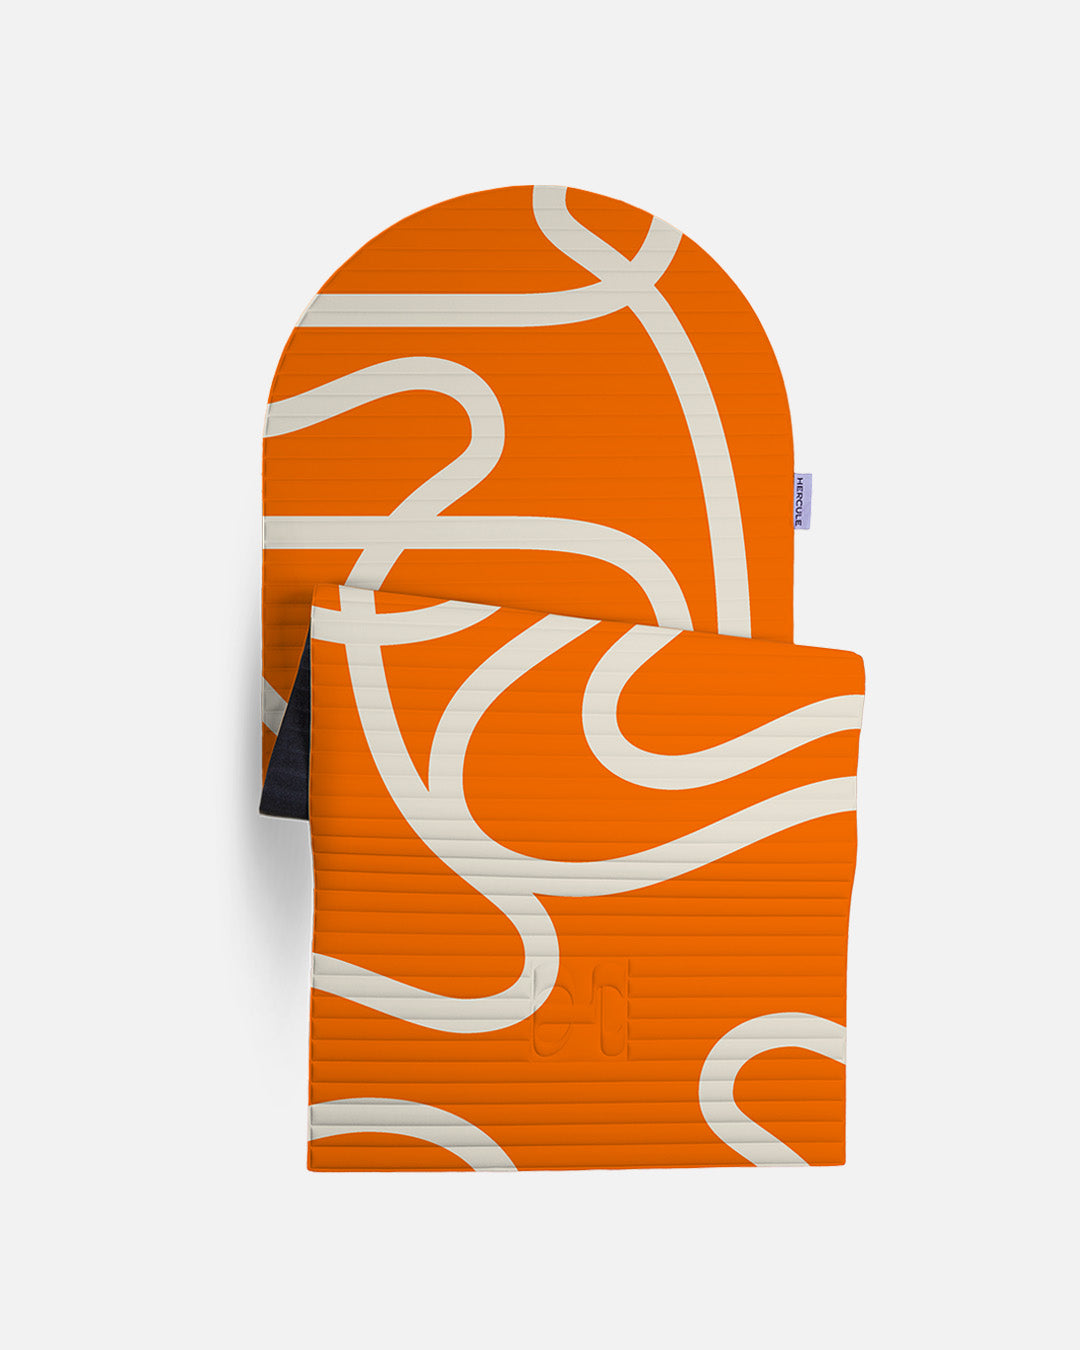 Tapis de sol pour le fitness le yoga et le pilates de la marque hercule studio modèle archy couleur imprimé bari orange pop packshot semi déplié